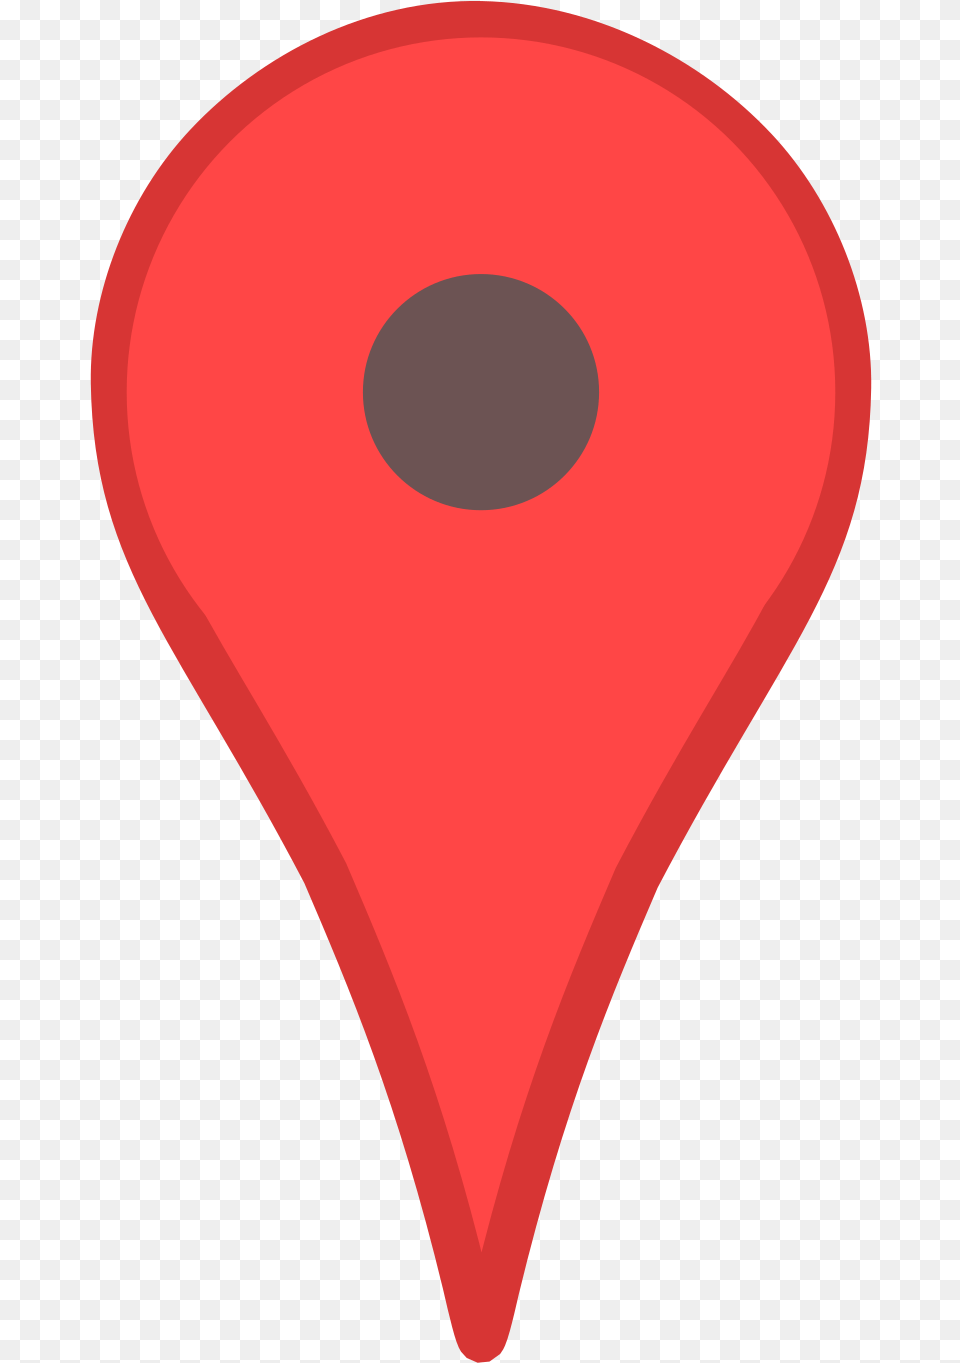 Setas Mapa Vermelha Background Google Maps Marker, Balloon, Heart, Guitar, Musical Instrument Free Transparent Png